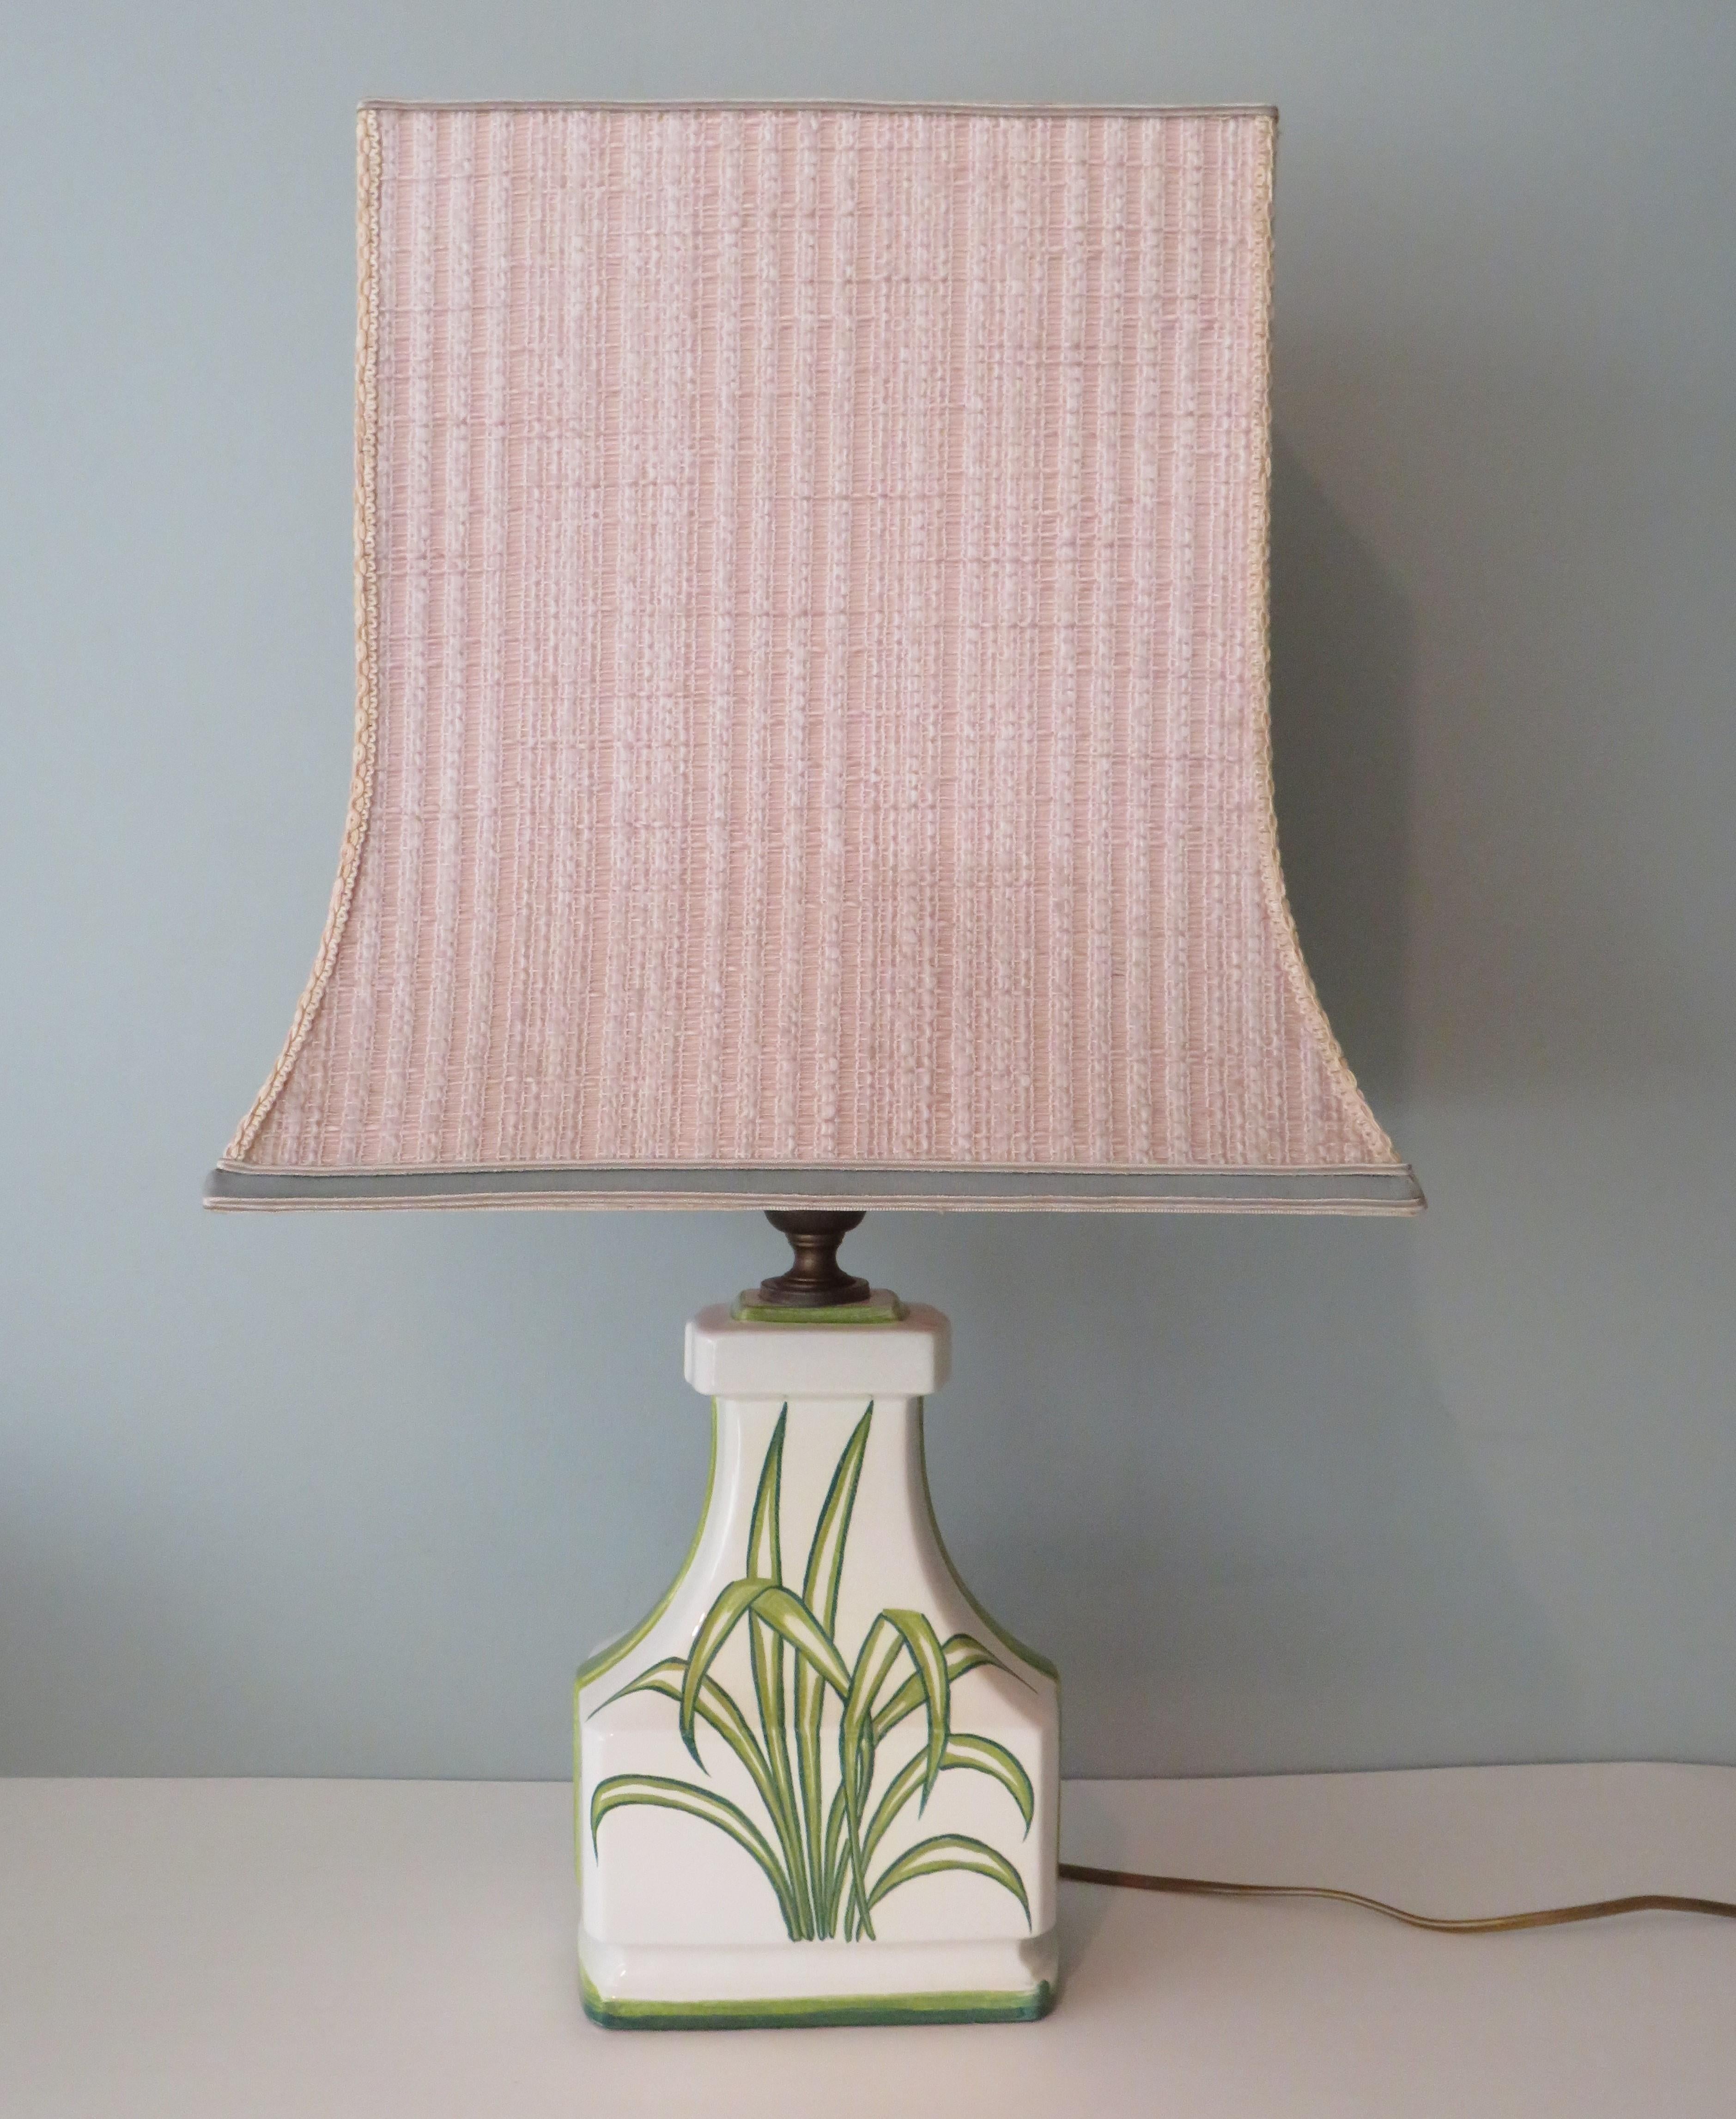 Große weiße Keramik-Tischlampe mit Palmenblattmotiv in verschiedenen Grüntönen.
Die Lampe hat eine Messingarmatur und einen pagodenförmigen Lampenschirm. Der Schirm ist aus ecrufarbenem Webstoff gefertigt und mit Samt eingefasst.
Das Kabel, der